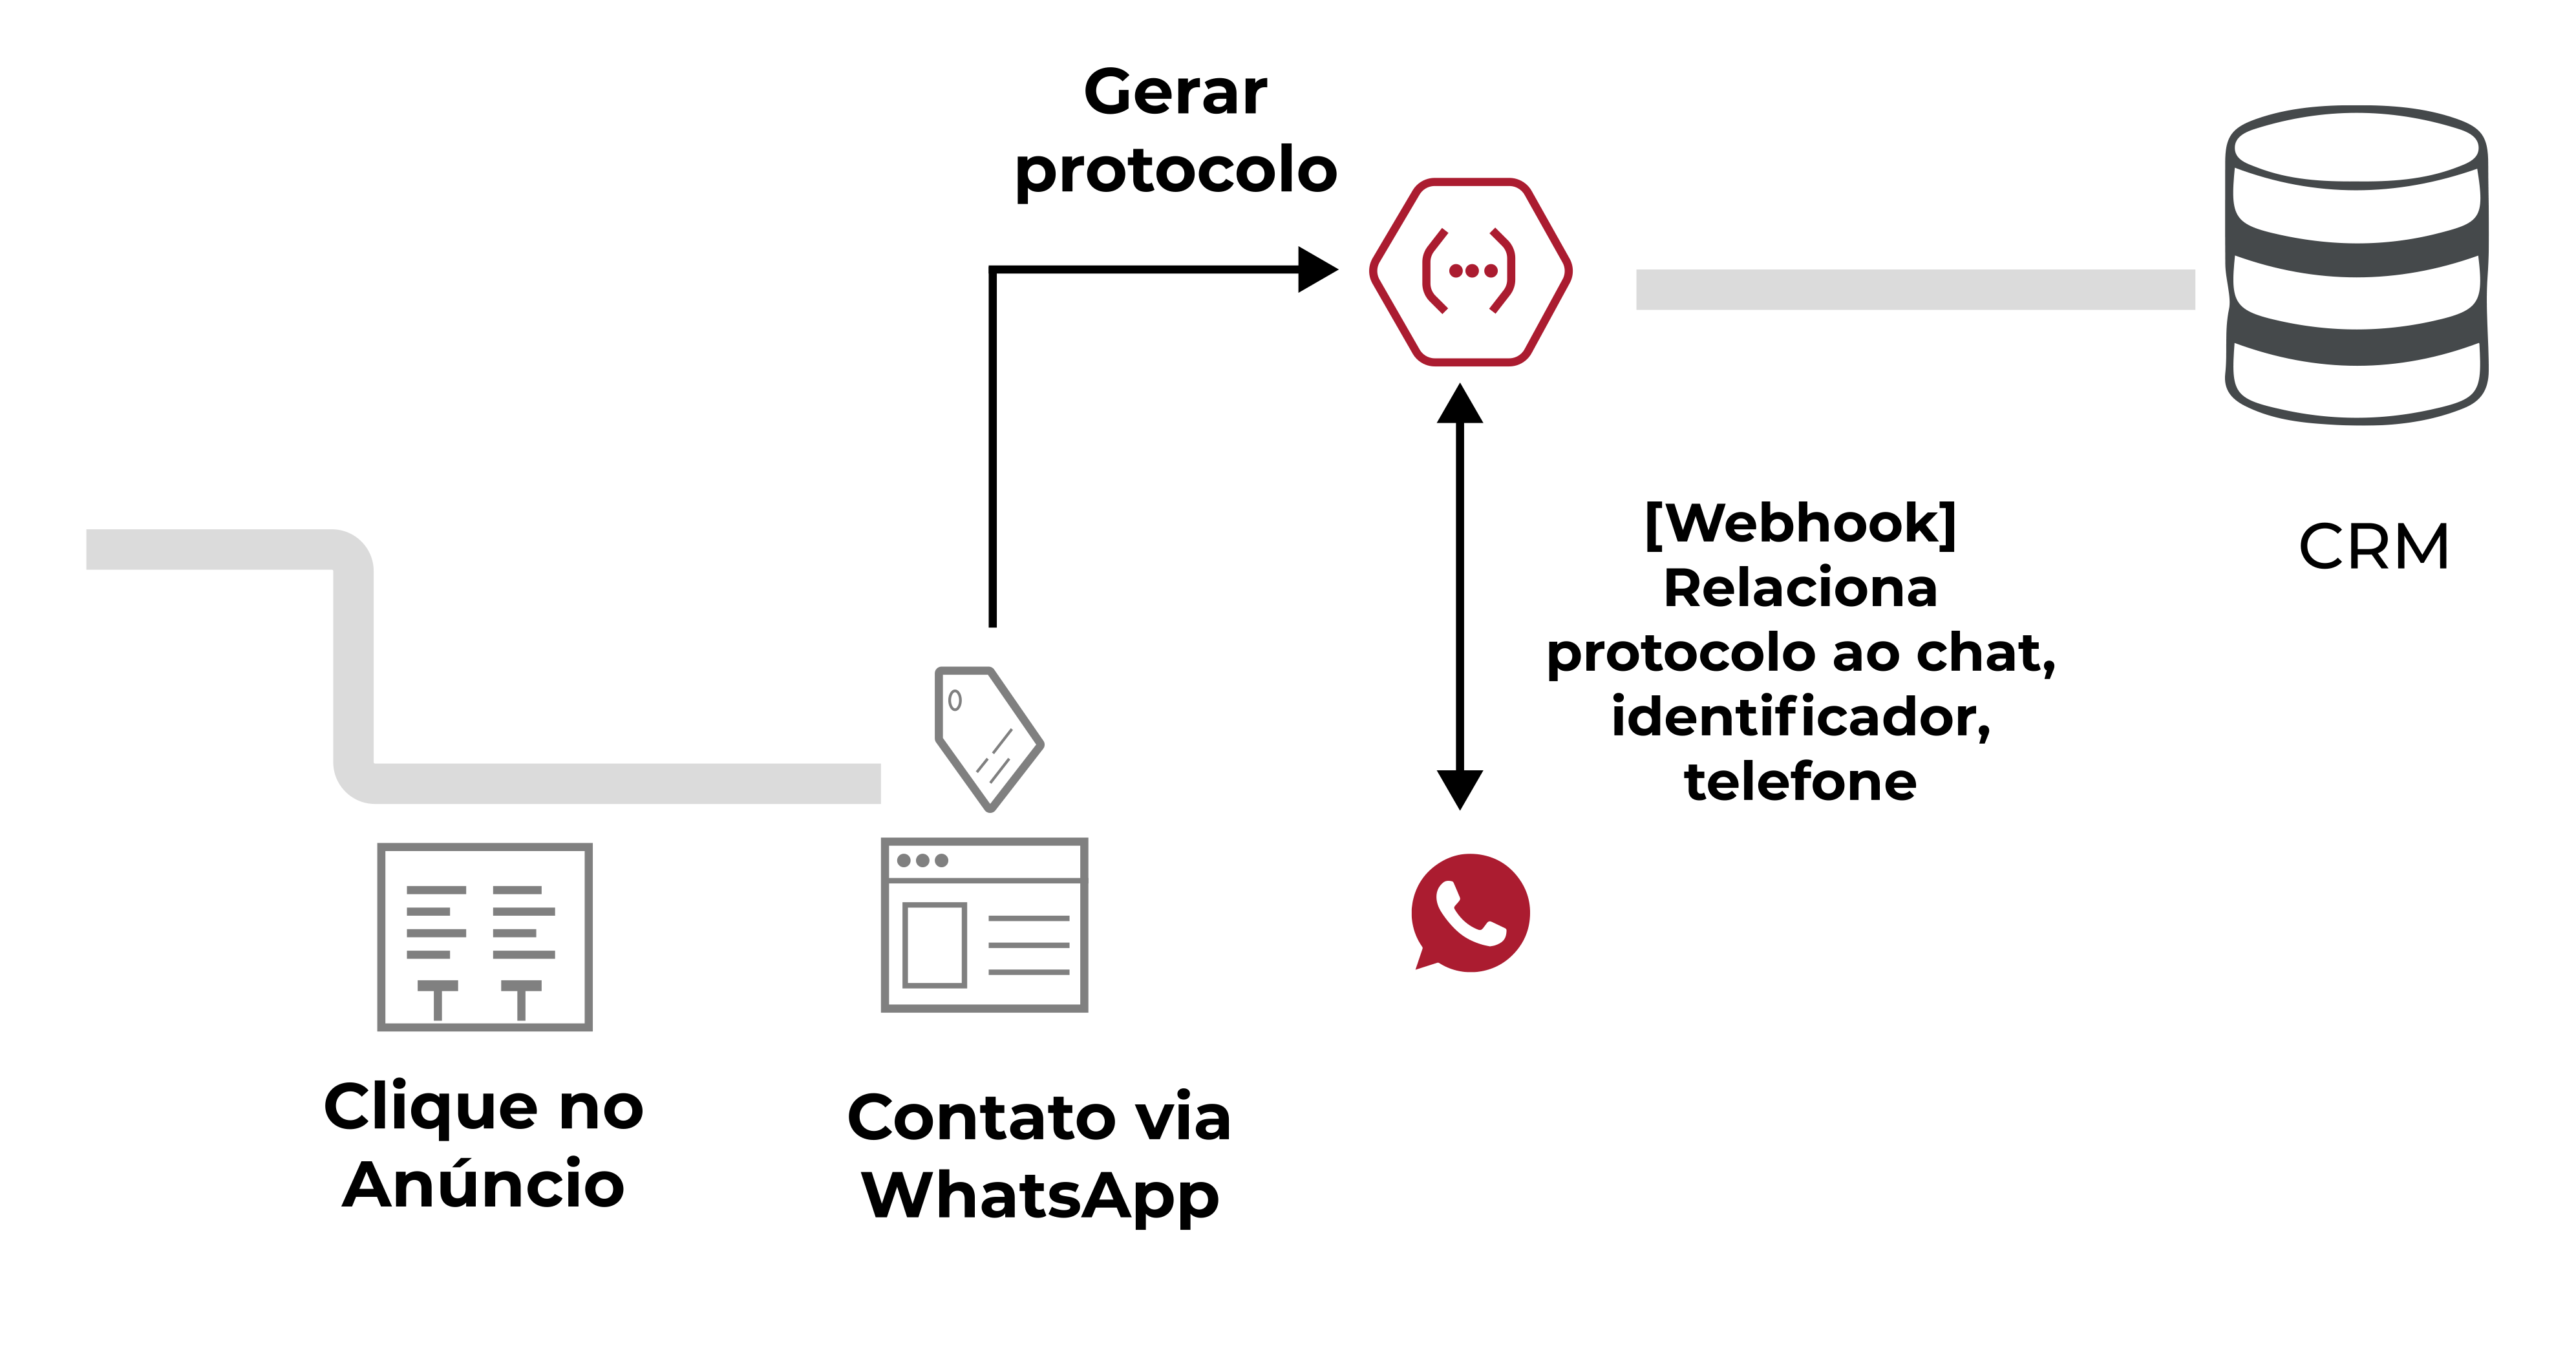 WhatsApp Conversion Import 1: imagem mostra o processo da chegada do CRM via whatsapp.